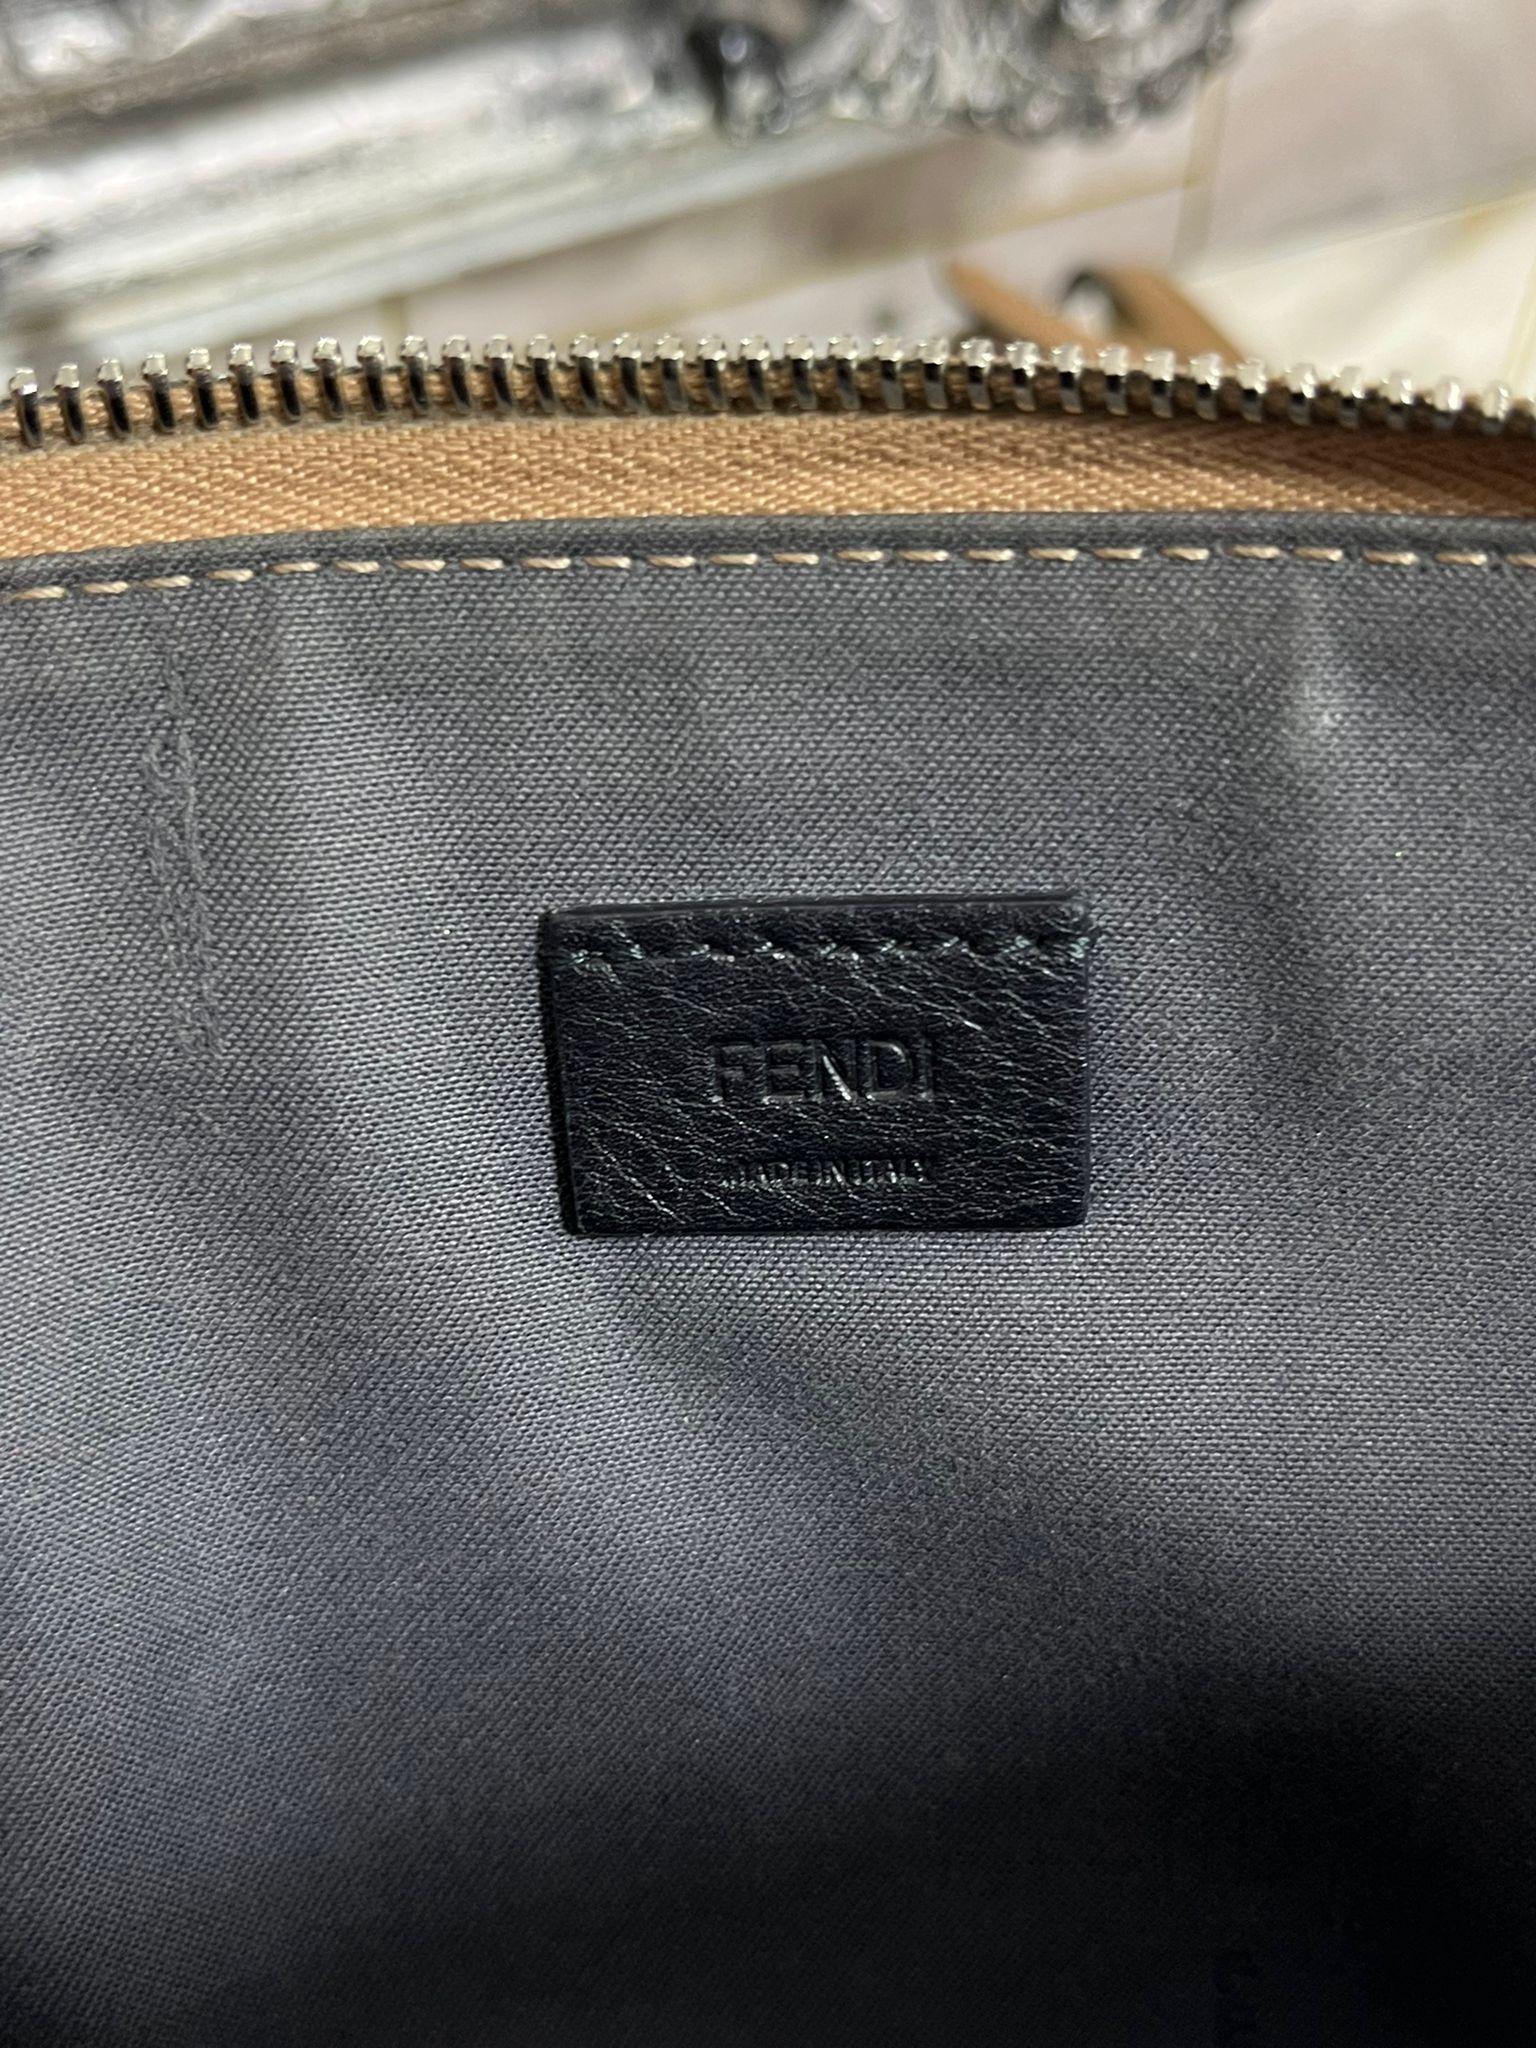 Fendi Rainbow Stud Leather Bag 5